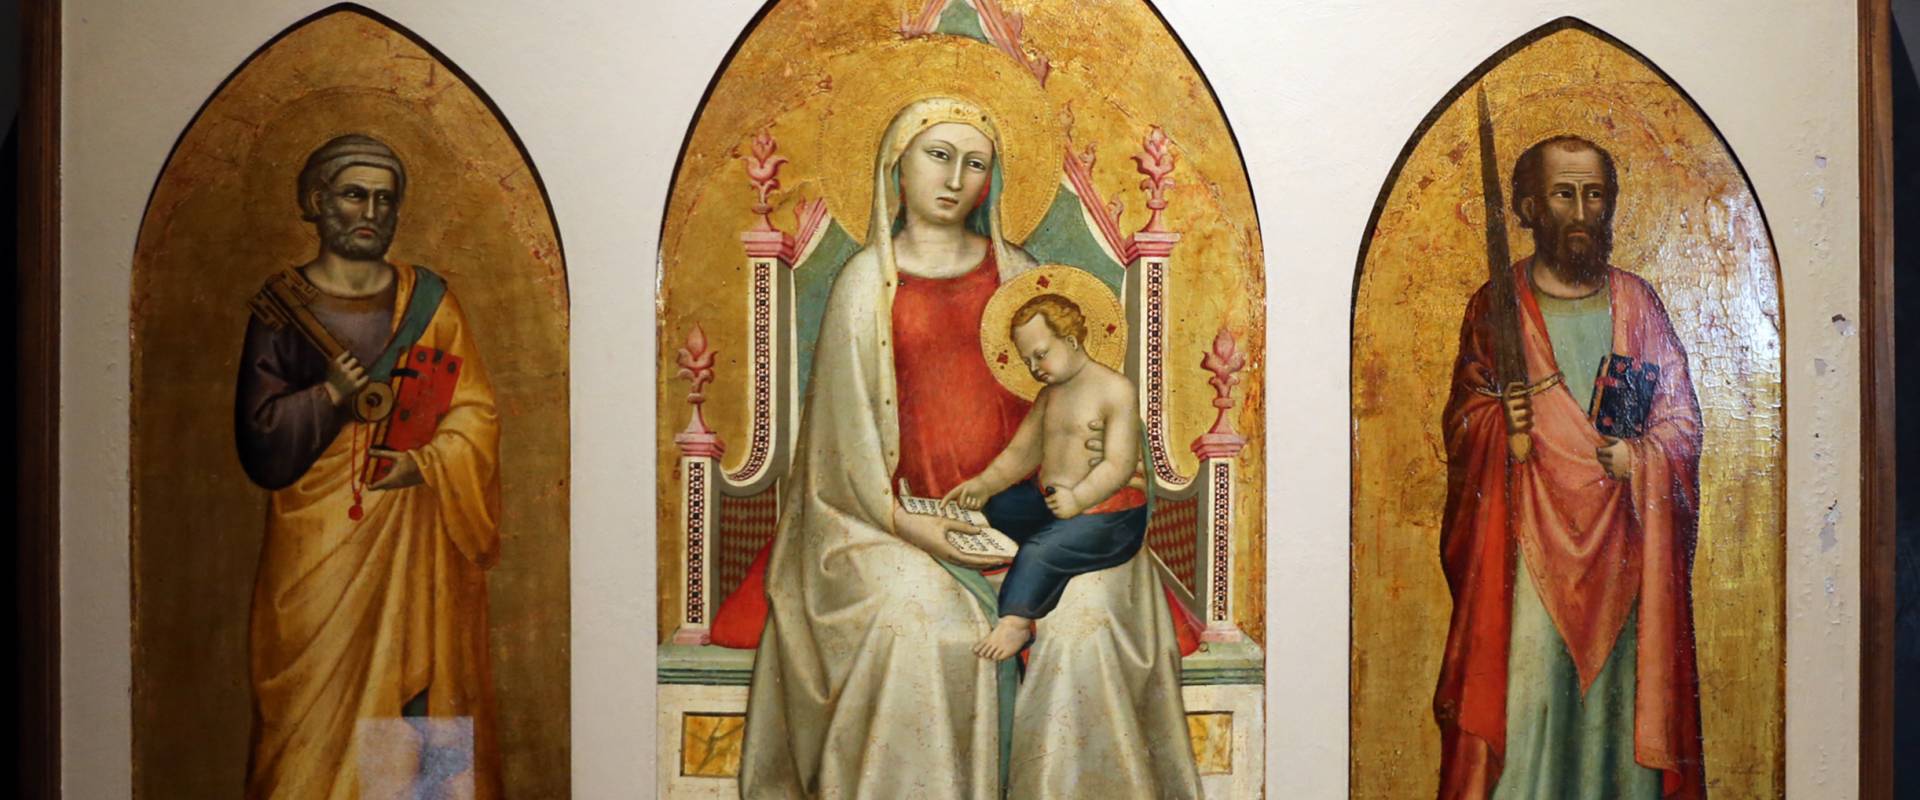 Bernardo daddi, madonna con bambino leggente e i santi pietro e paolo, 1320-30 ca. 01 foto di Sailko